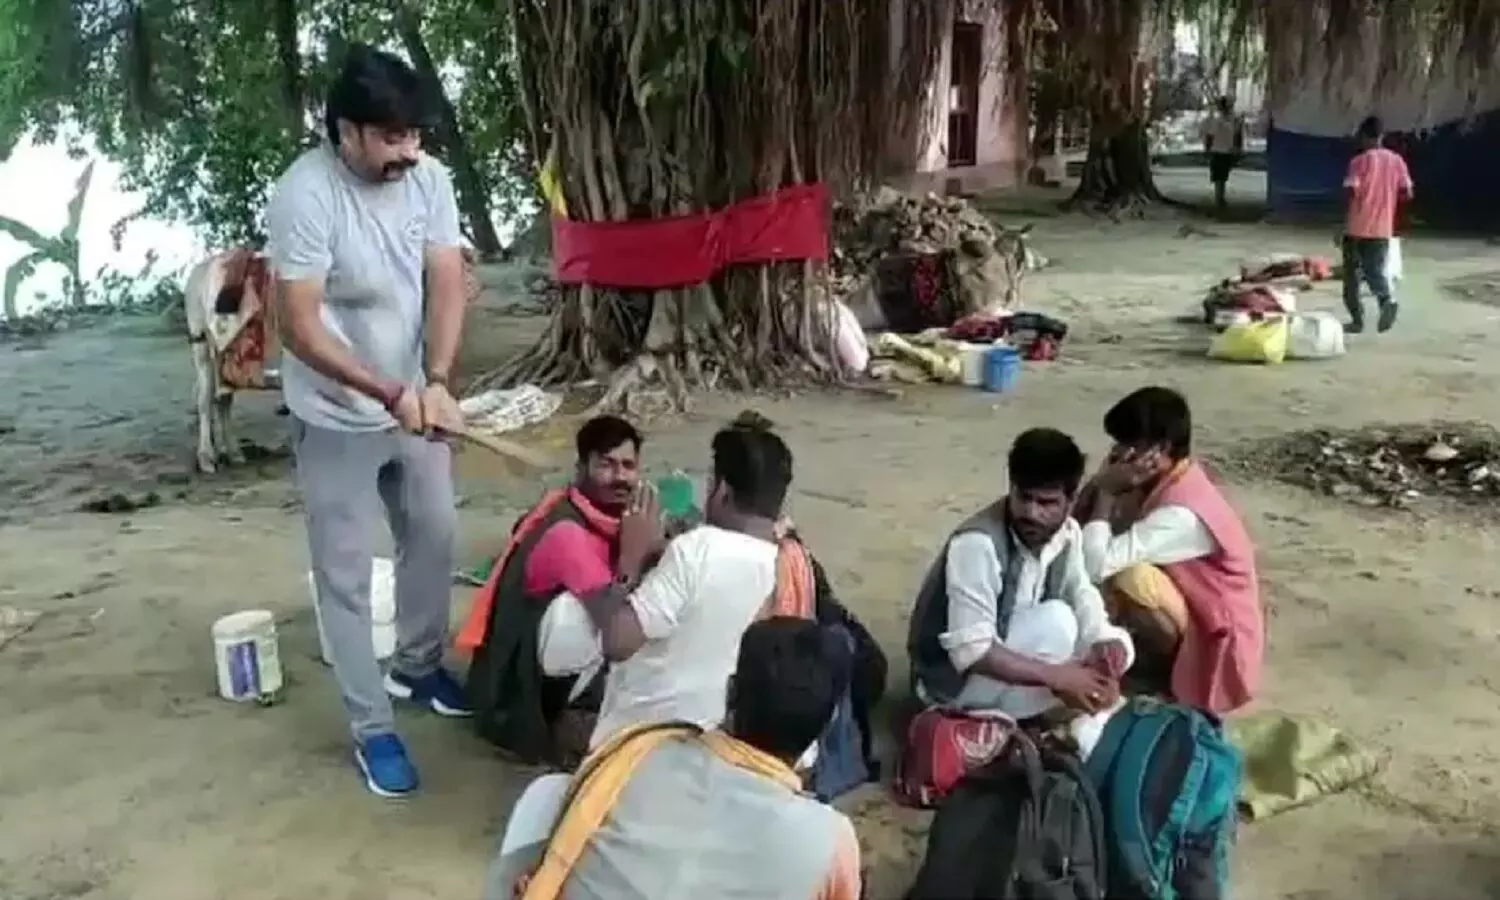 Bihar News: साधु के वेश में नंदी घुमाकर भिक्षा मांग रहे थे 6 मुस्लिम युवक, खूब पिटाई हुई, देखें वीडियो